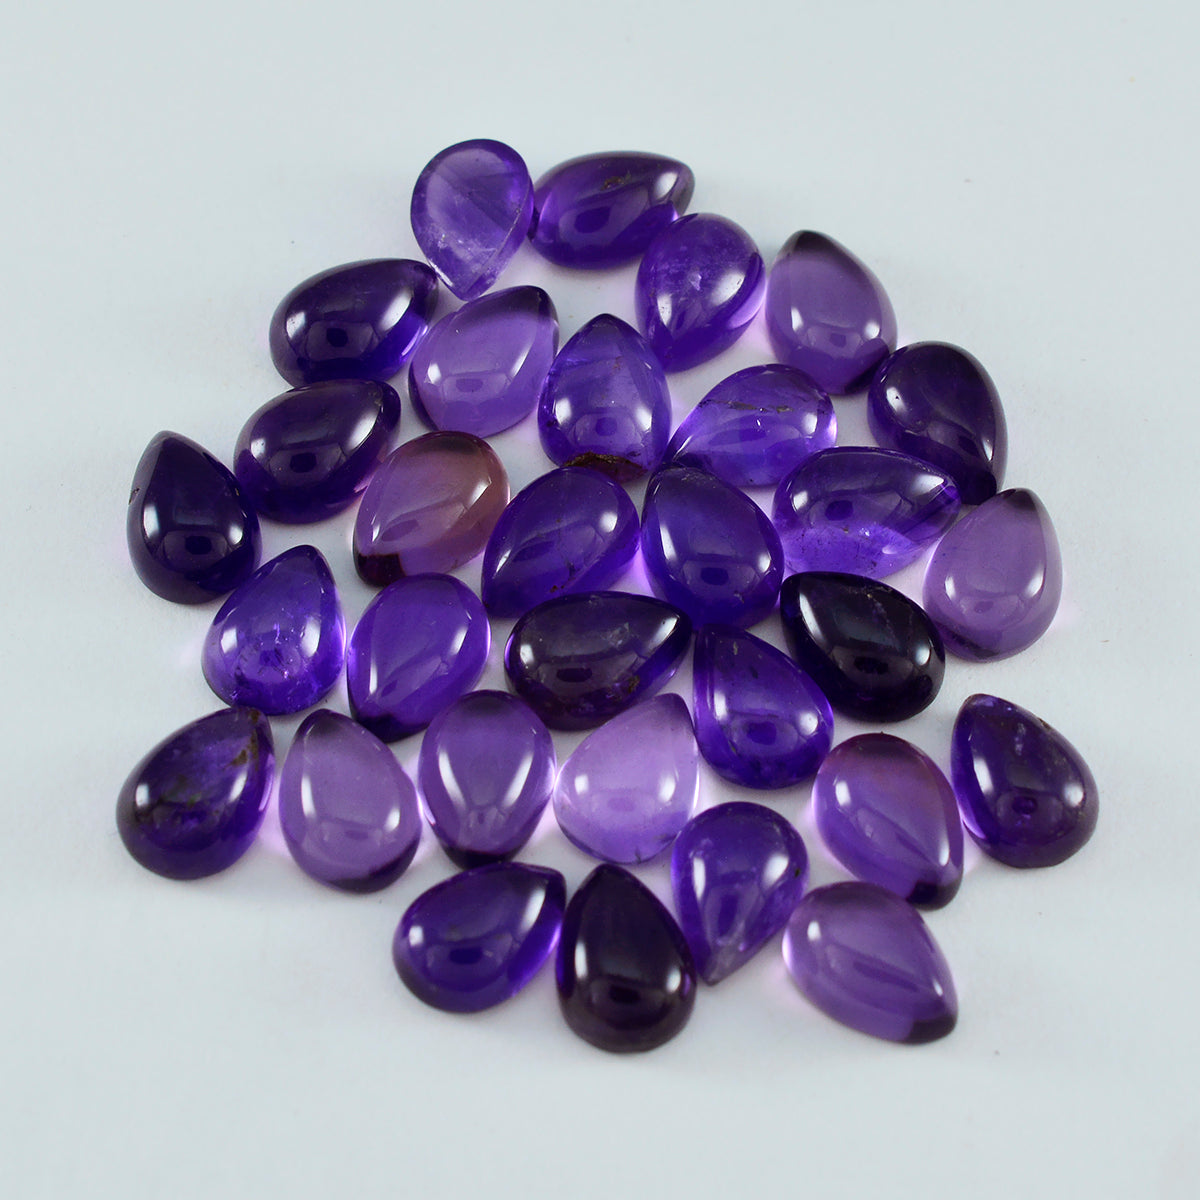 Riyogems 1 pieza cabujón de amatista púrpura 6x9 mm forma de pera piedra suelta de buena calidad